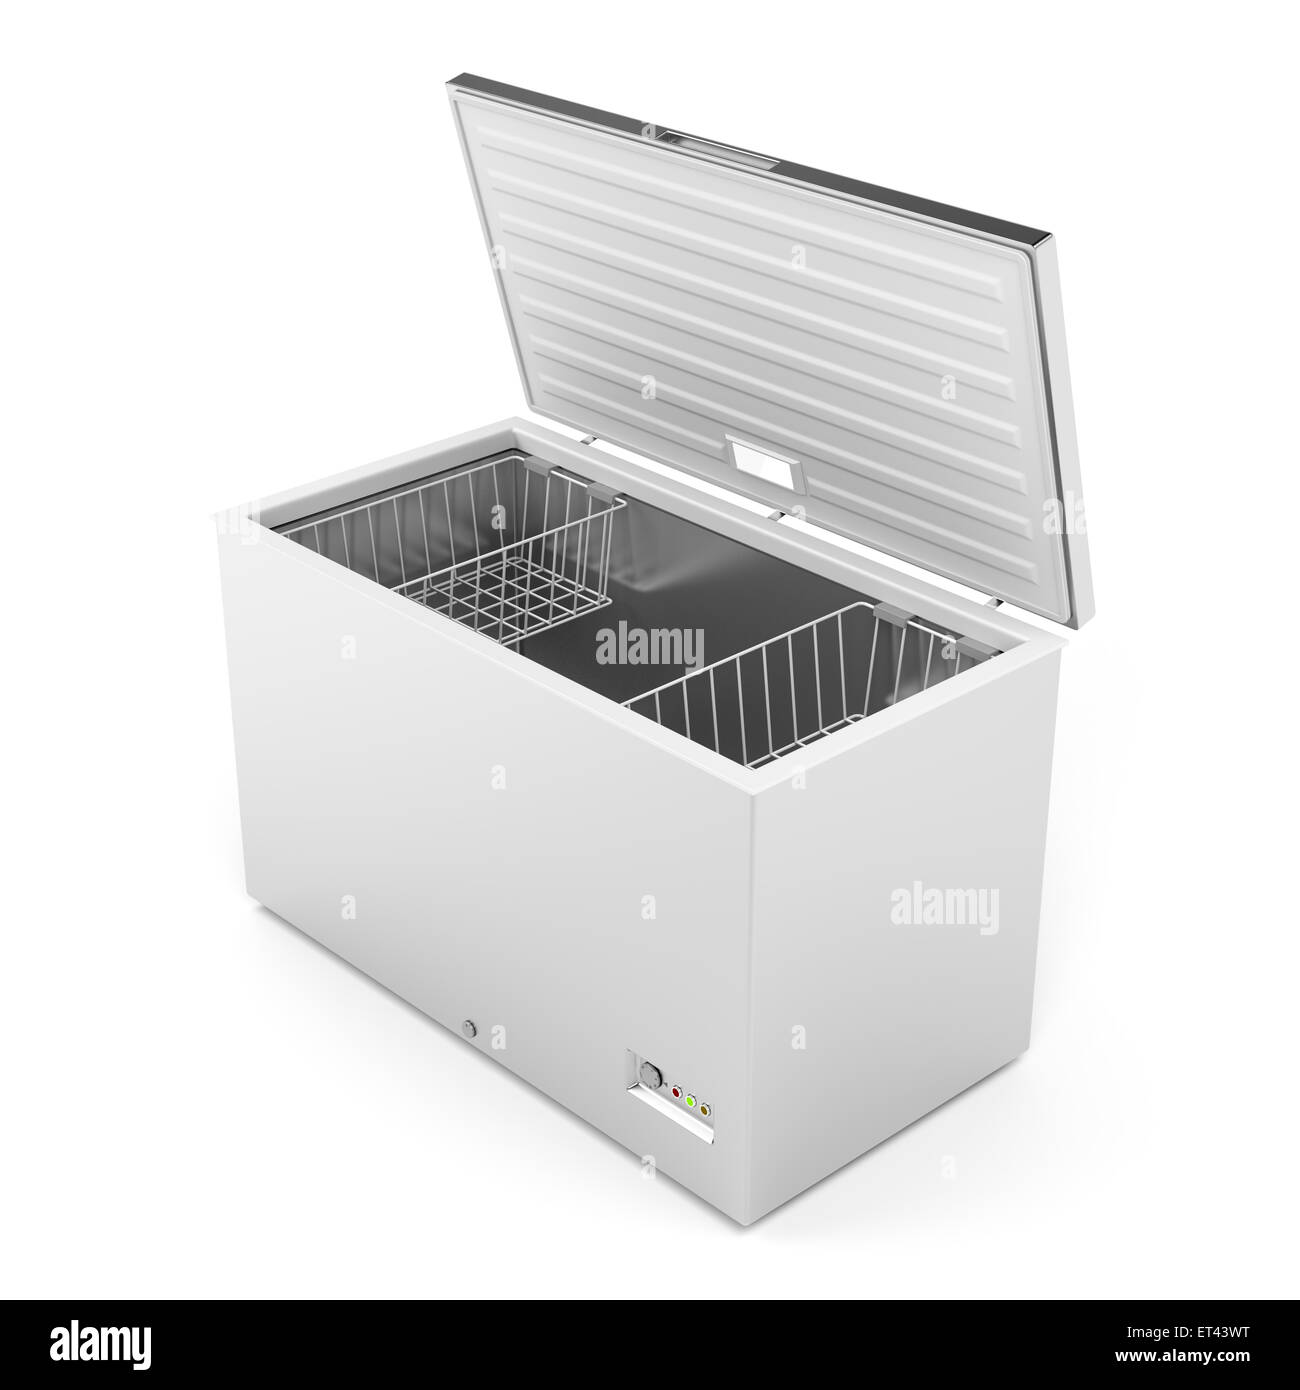 Silver freezer on white background Stock Photo